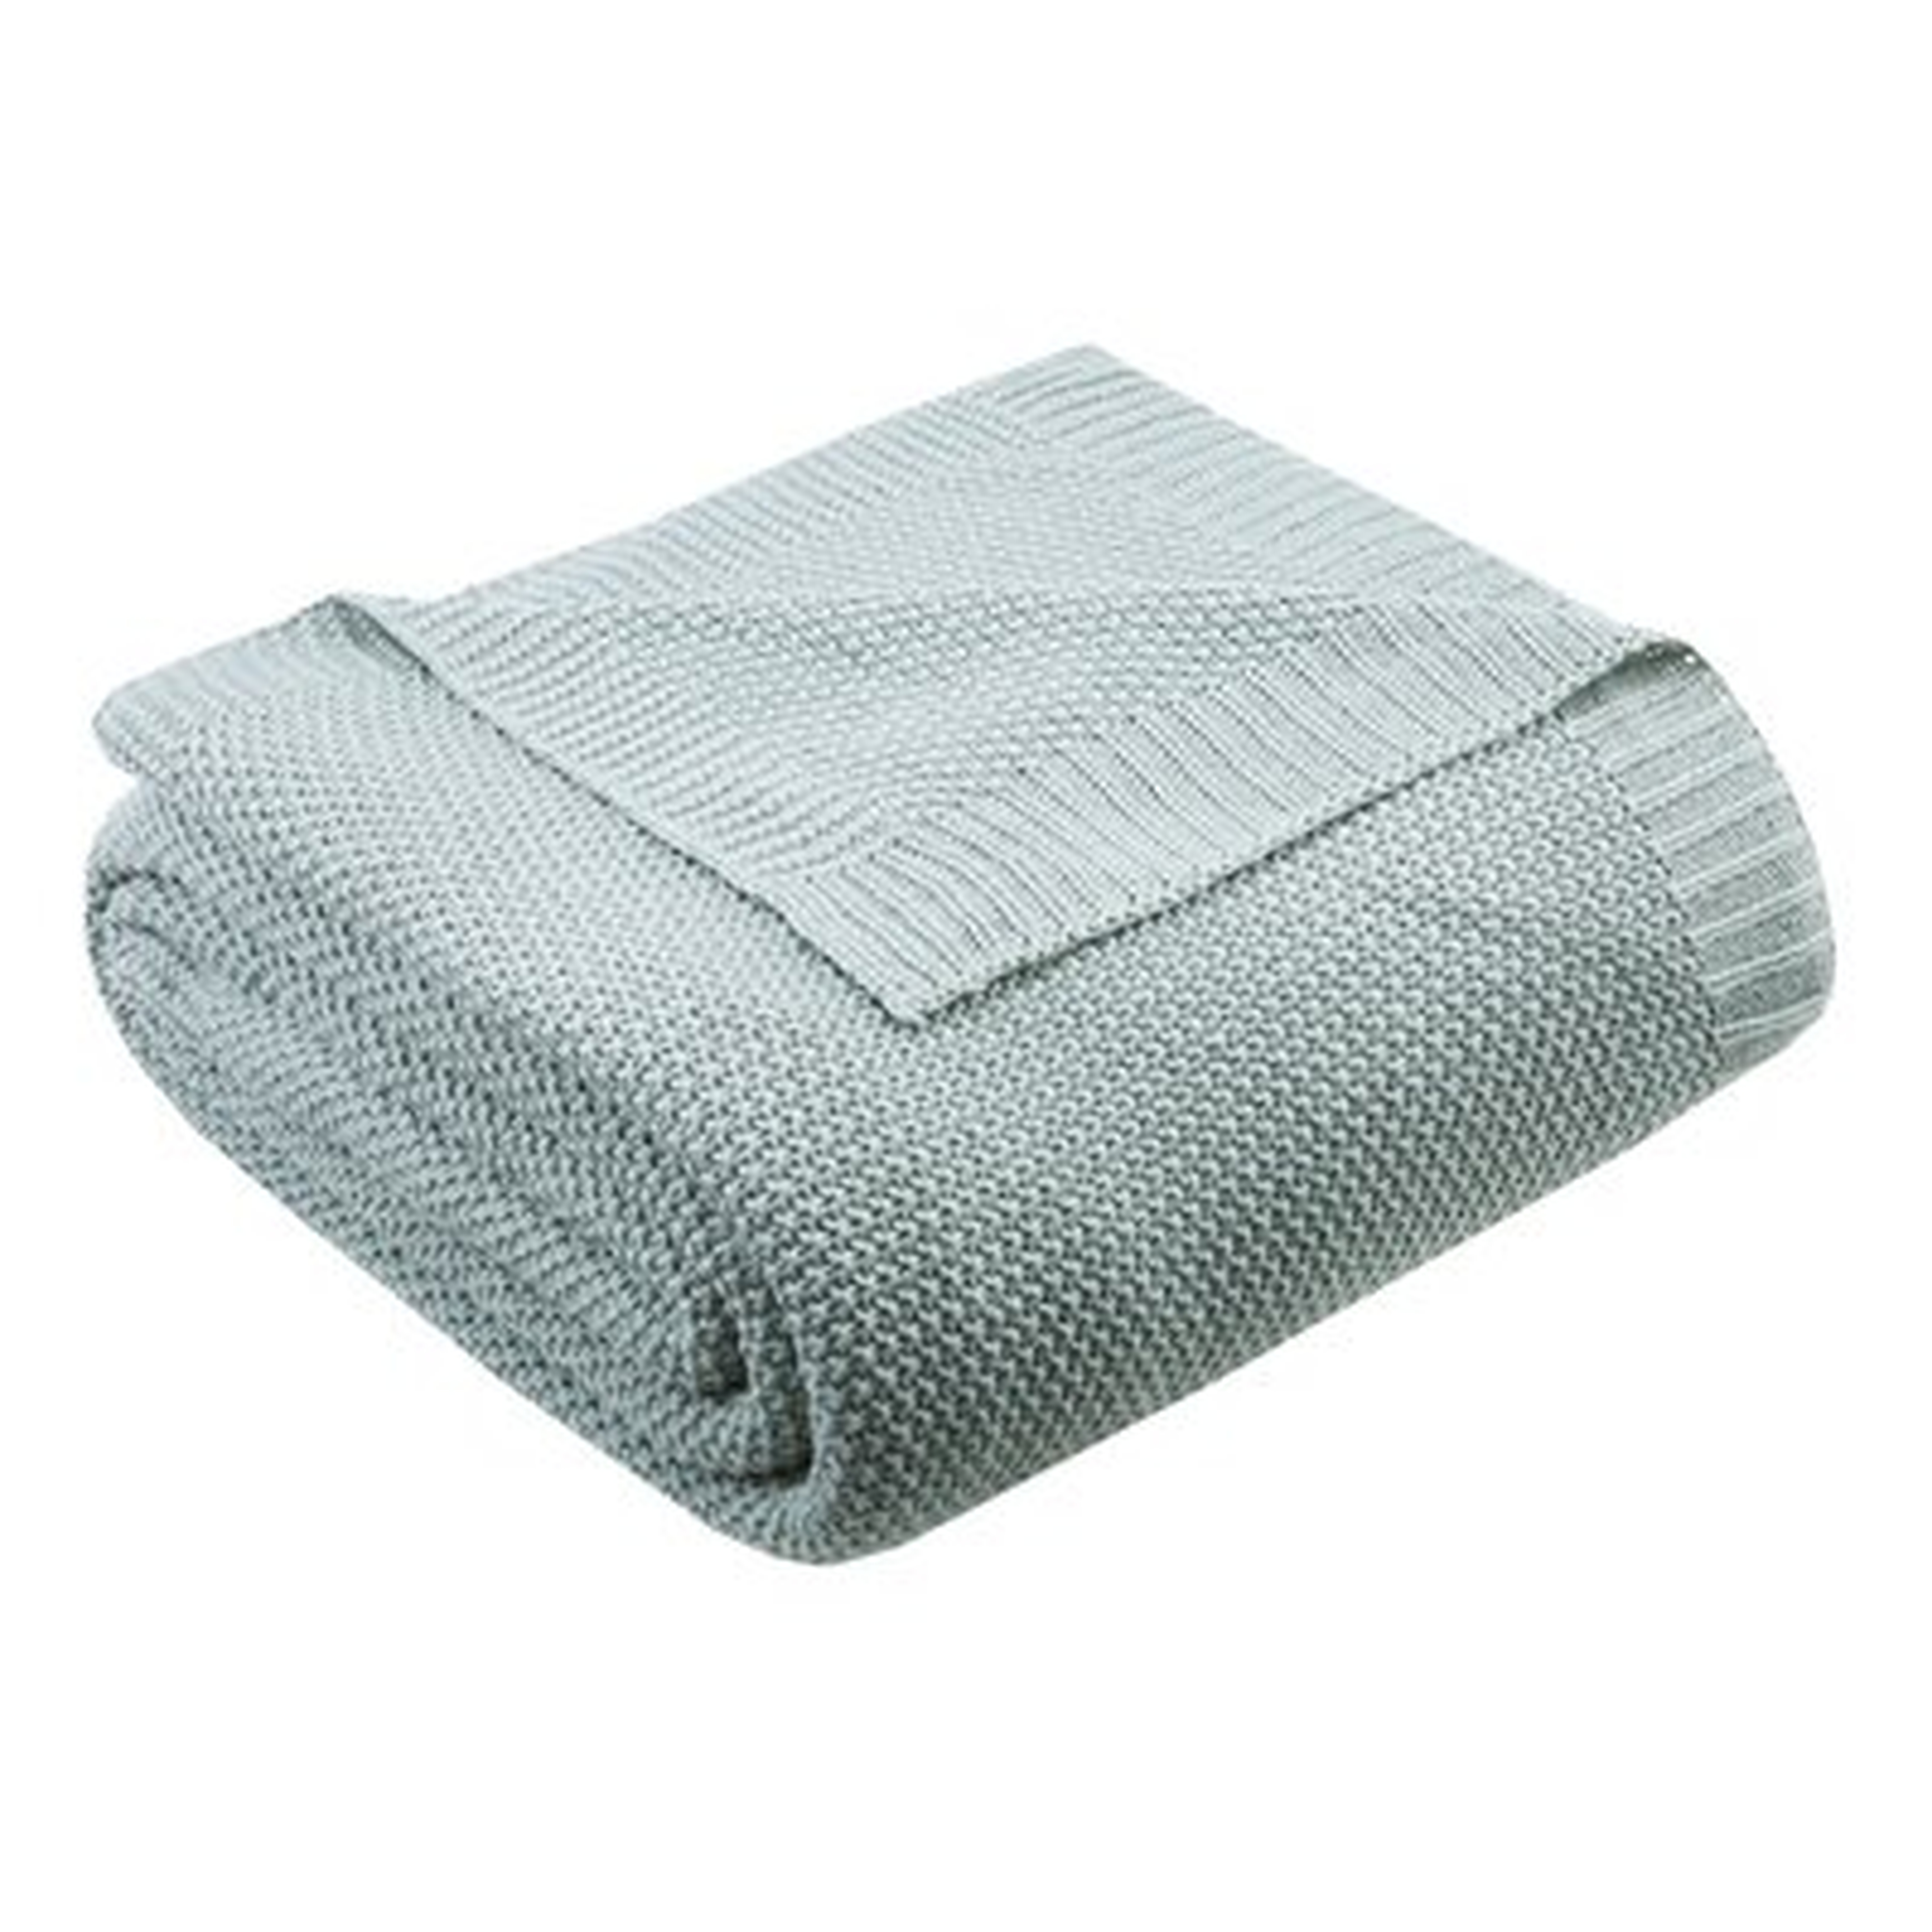 Winnsboro Knit Blanket - Birch Lane